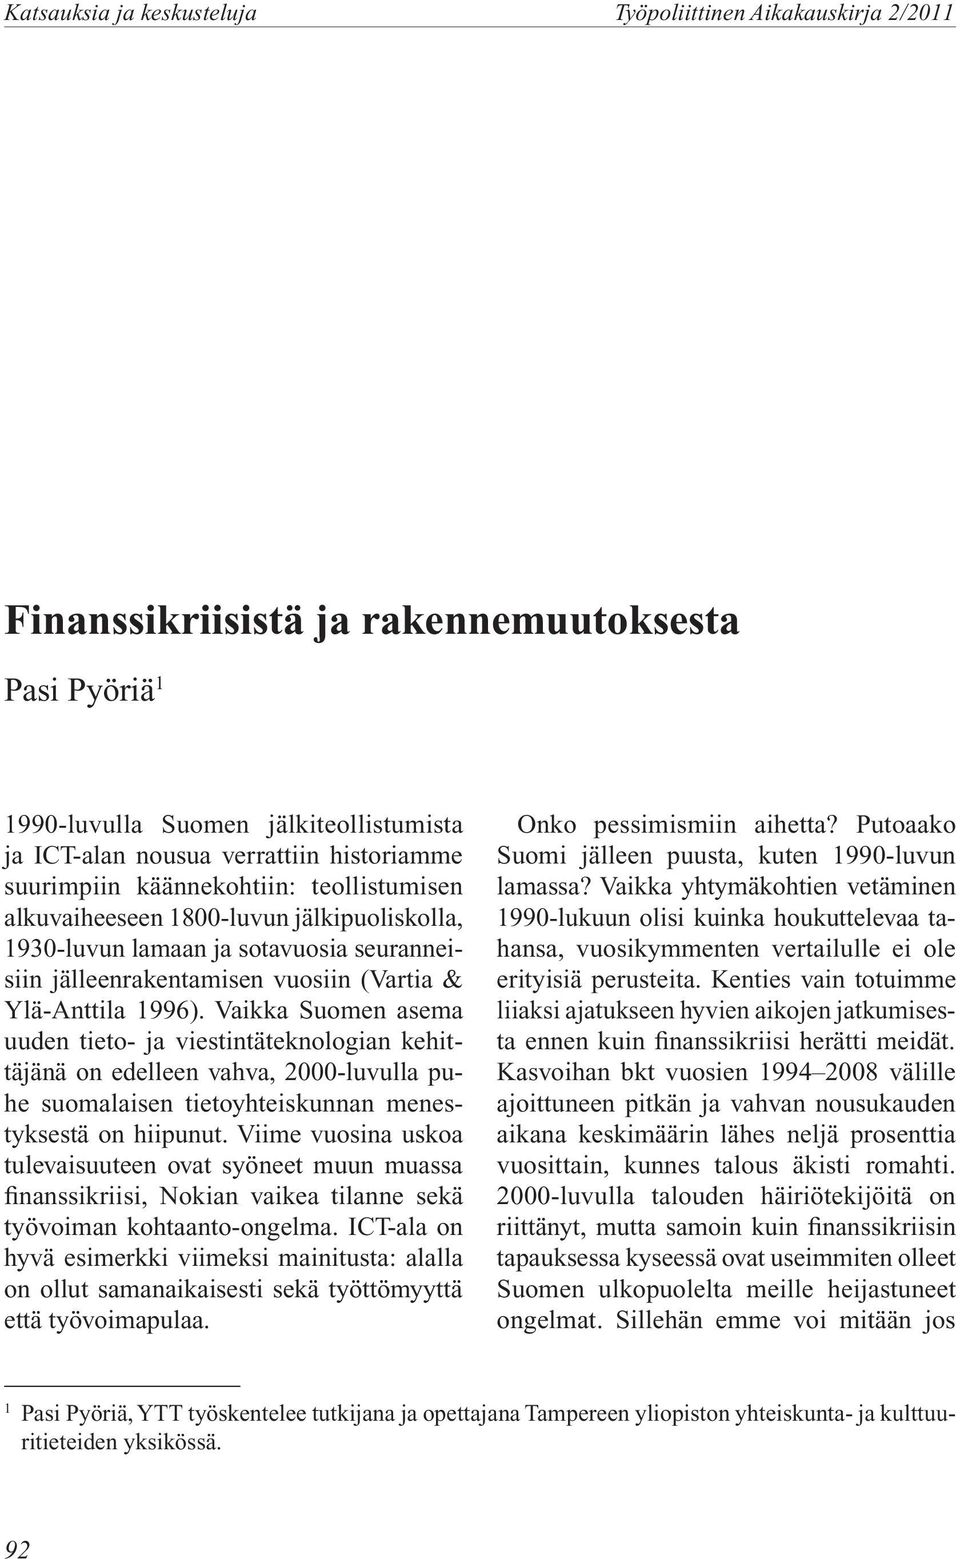 Vaikka Suomen asema uuden tieto- ja viestintäteknologian kehittäjänä on edelleen vahva, 2000-luvulla puhe suomalaisen tietoyhteiskunnan menestyksestä on hiipunut.